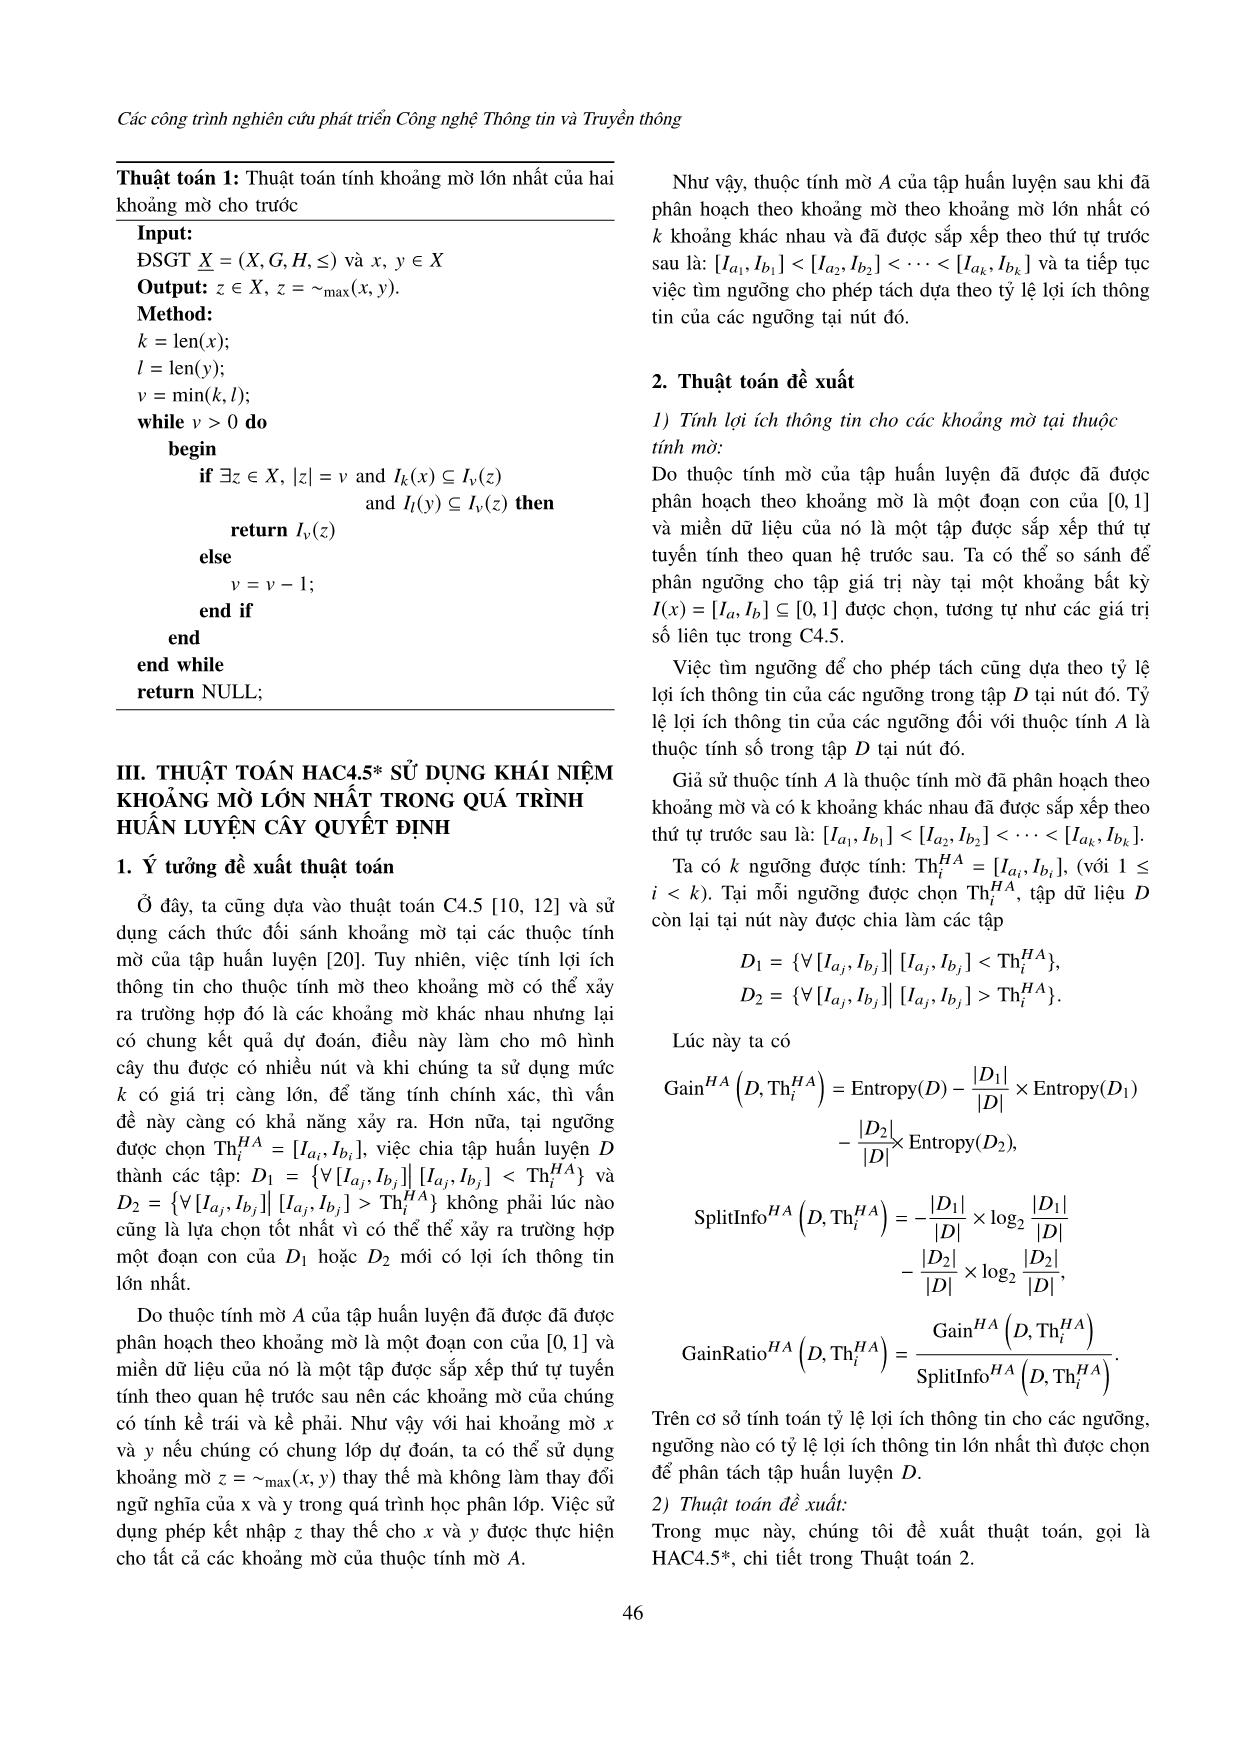 Tối ưu quá trình học cây quyết định cho bài toán phân lớp theo cách tiếp cận khoảng mờ lớn nhất trang 5